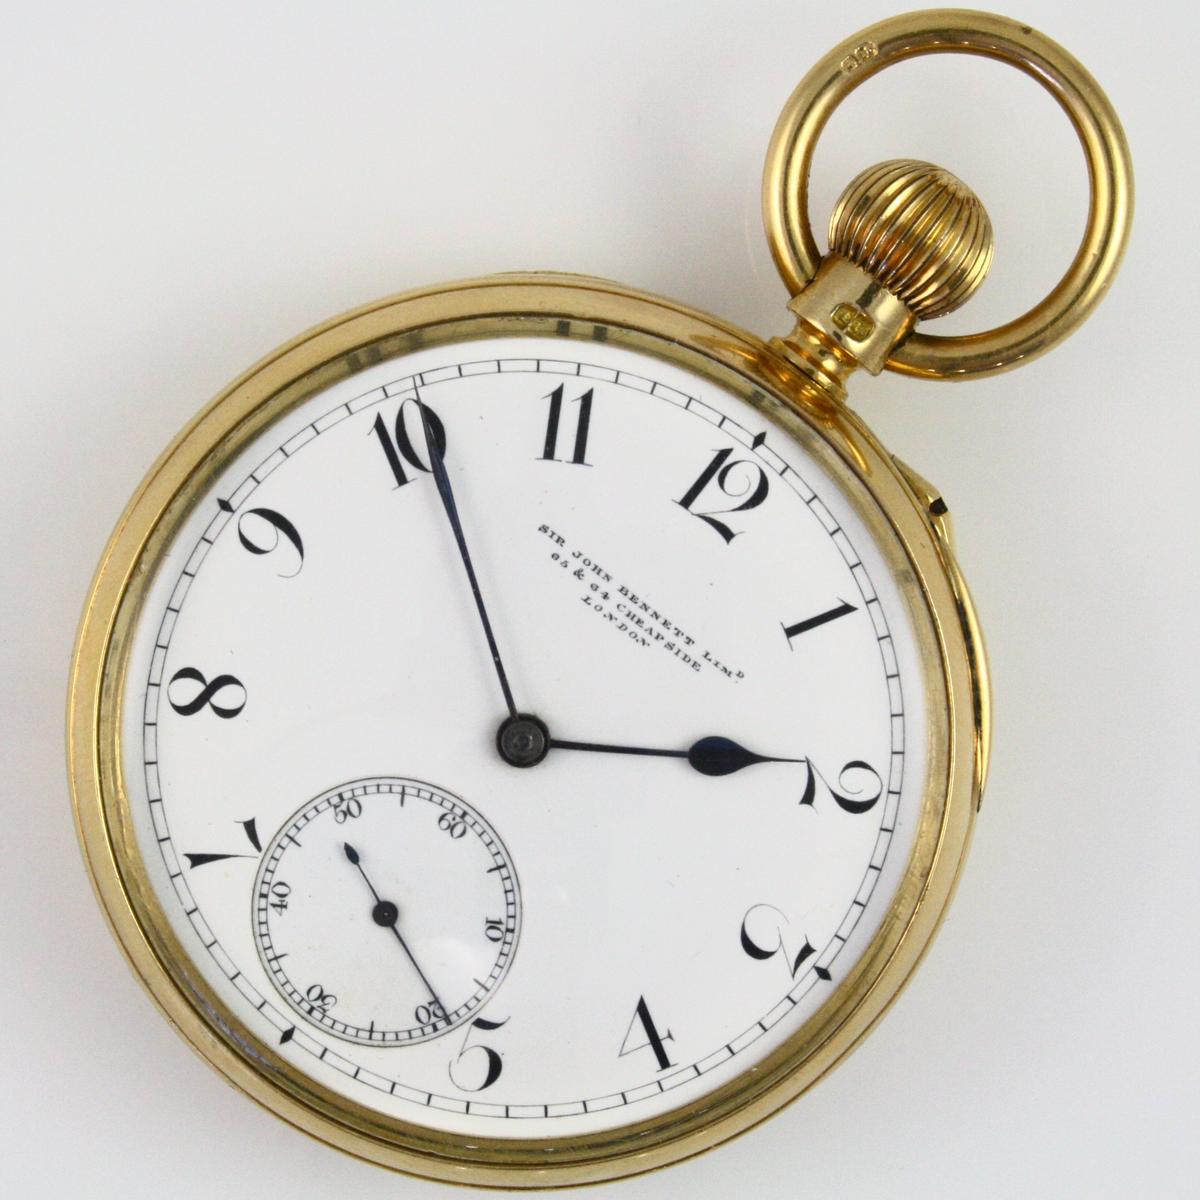 Circa 1880 Sir John Bennett Ltd. (London) pin-set open-face pocket watch